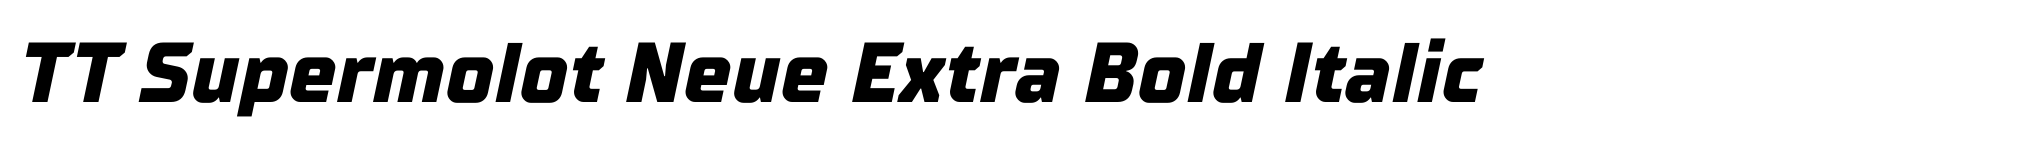 TT Supermolot Neue Extra Bold Italic image